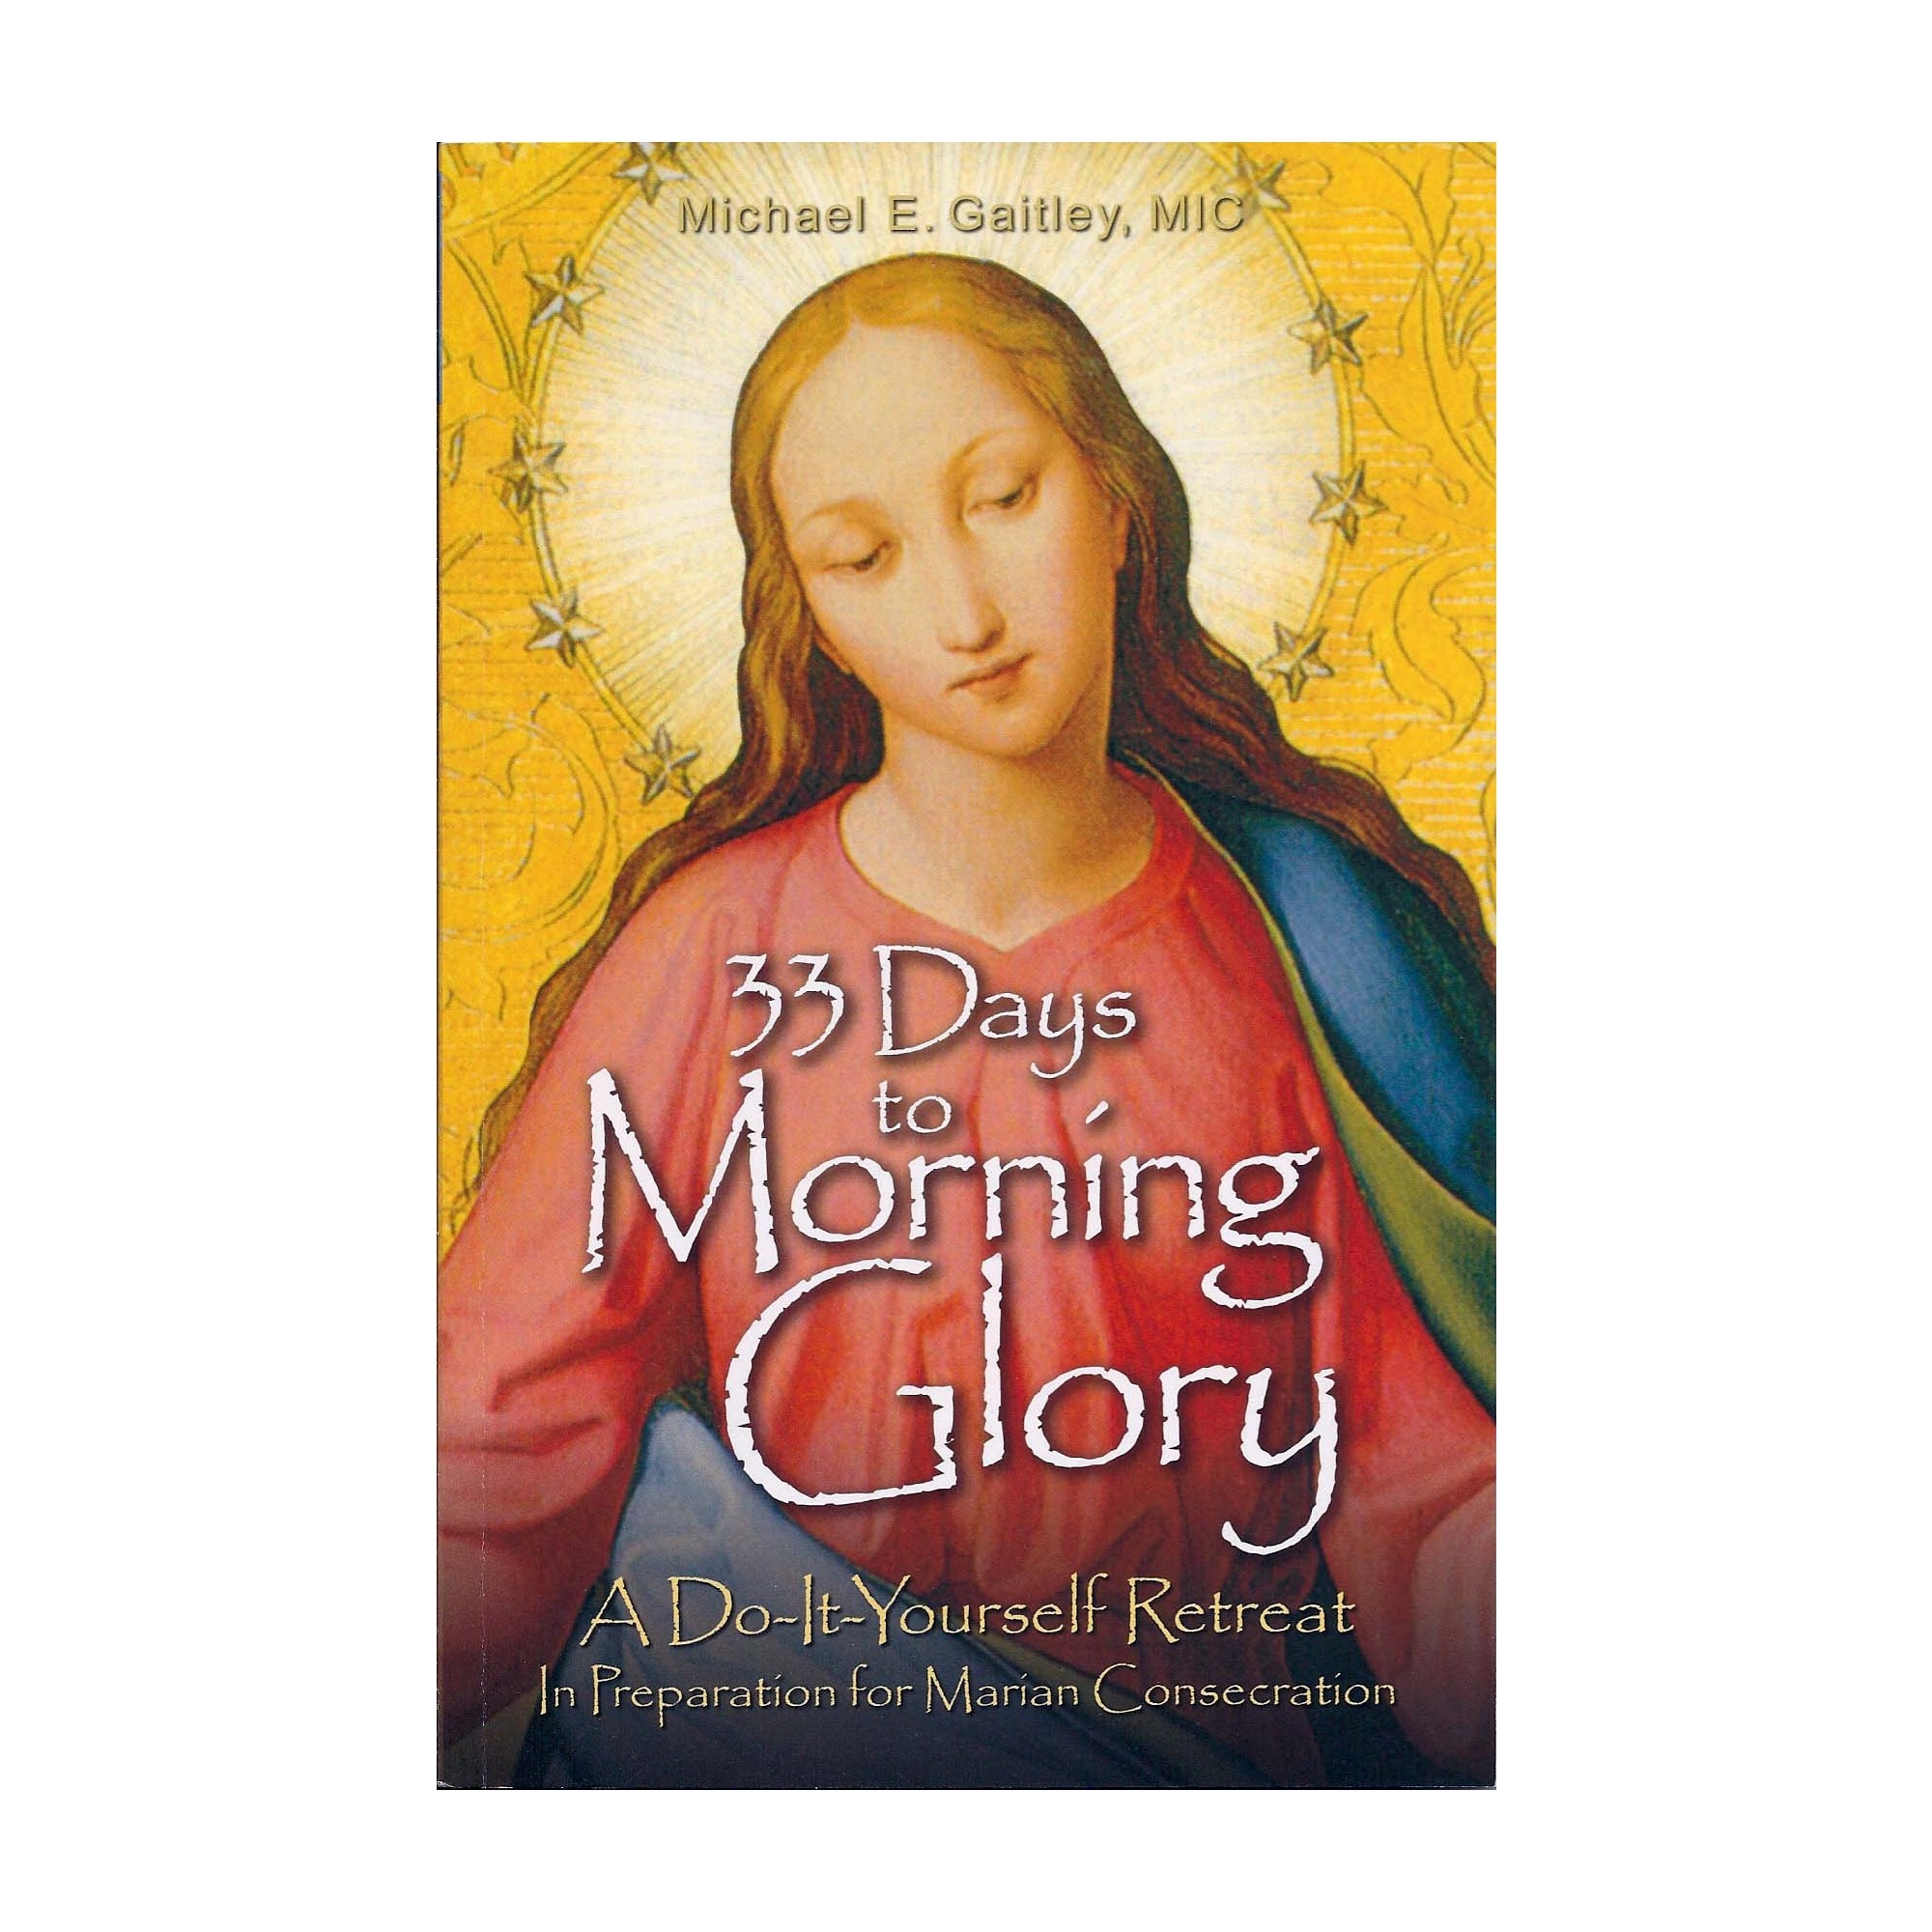 33 Days To Morning Glory The Catholic Company 